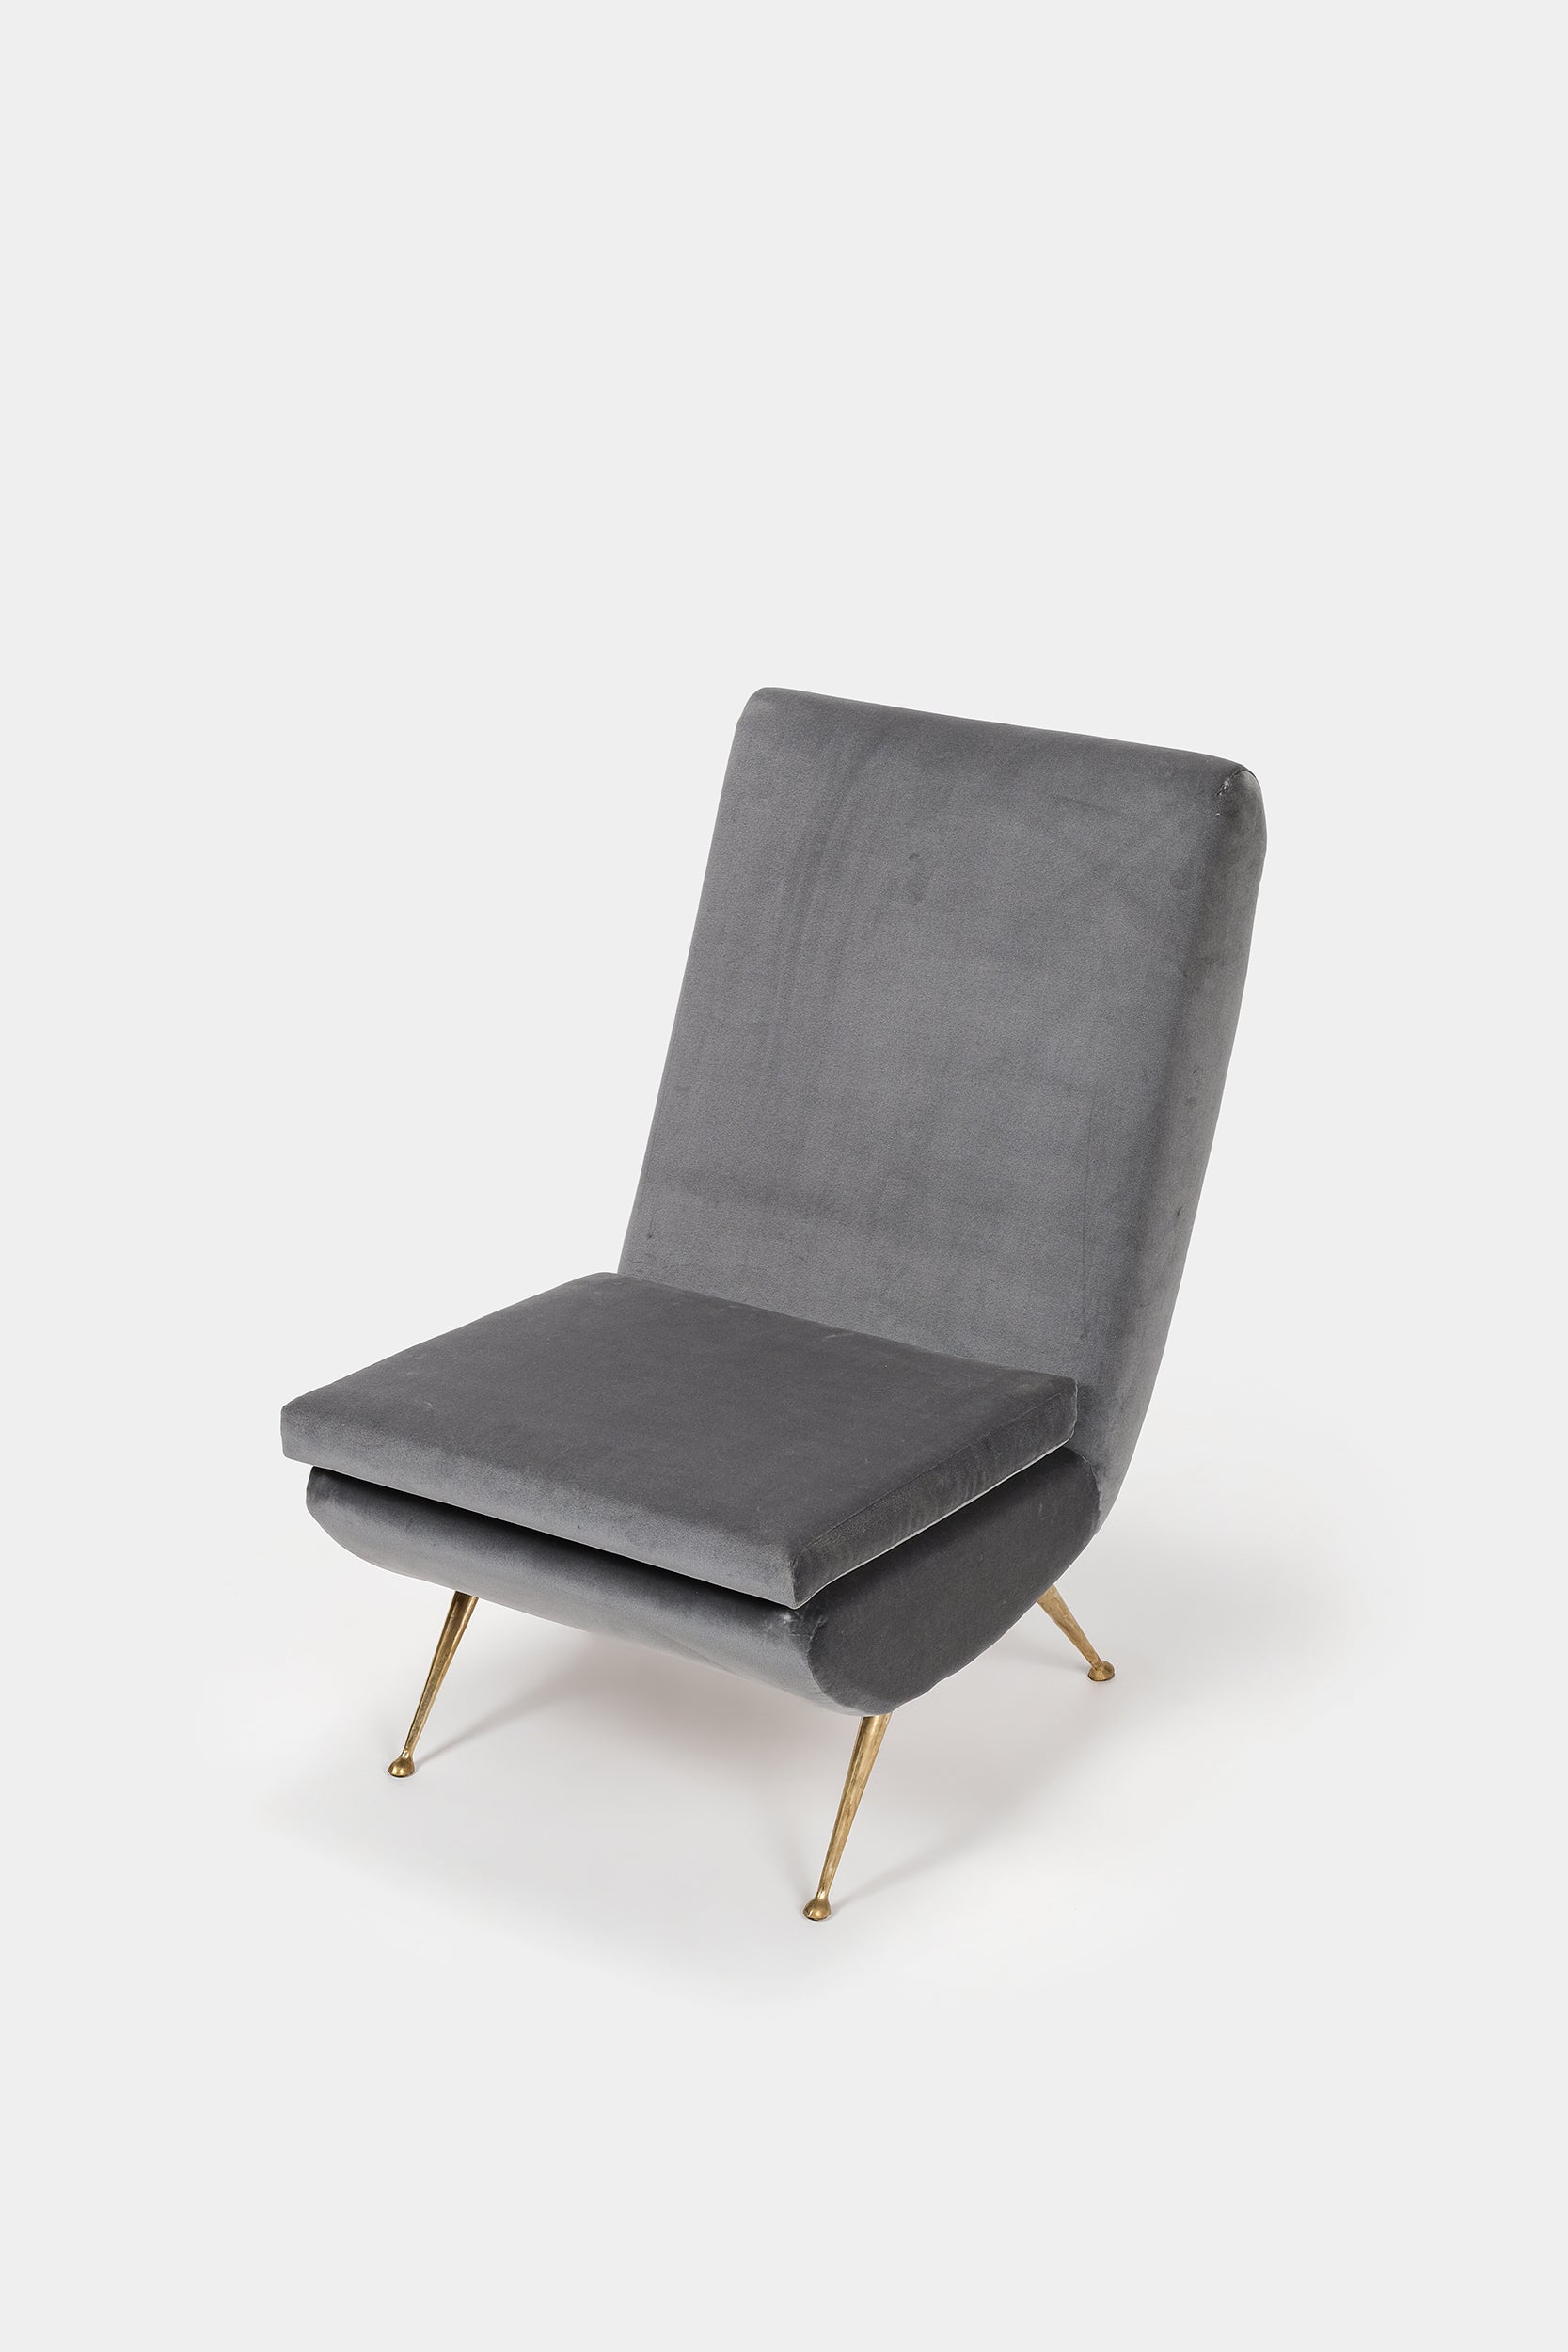 Aldo Morbelli, Easy Chair, Velours, I.S.A. Bergamo, 50er